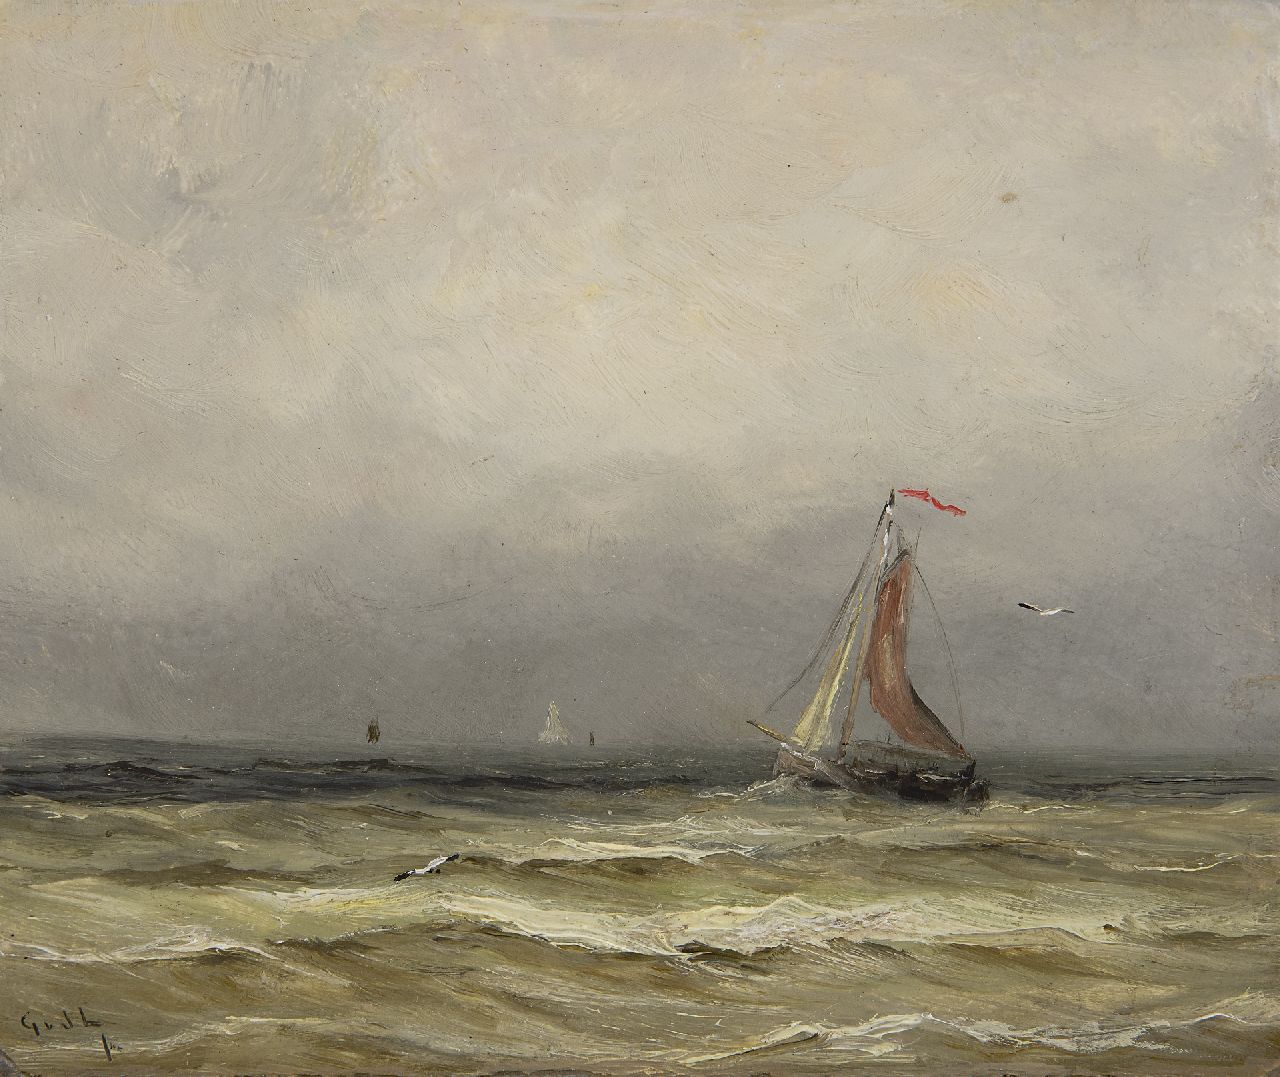 Laan G. van der | Gerard van der Laan, Fishing ship from Scheveningen at sea, oil on painter's board 15.7 x 18.6 cm, signed l.l. with initials